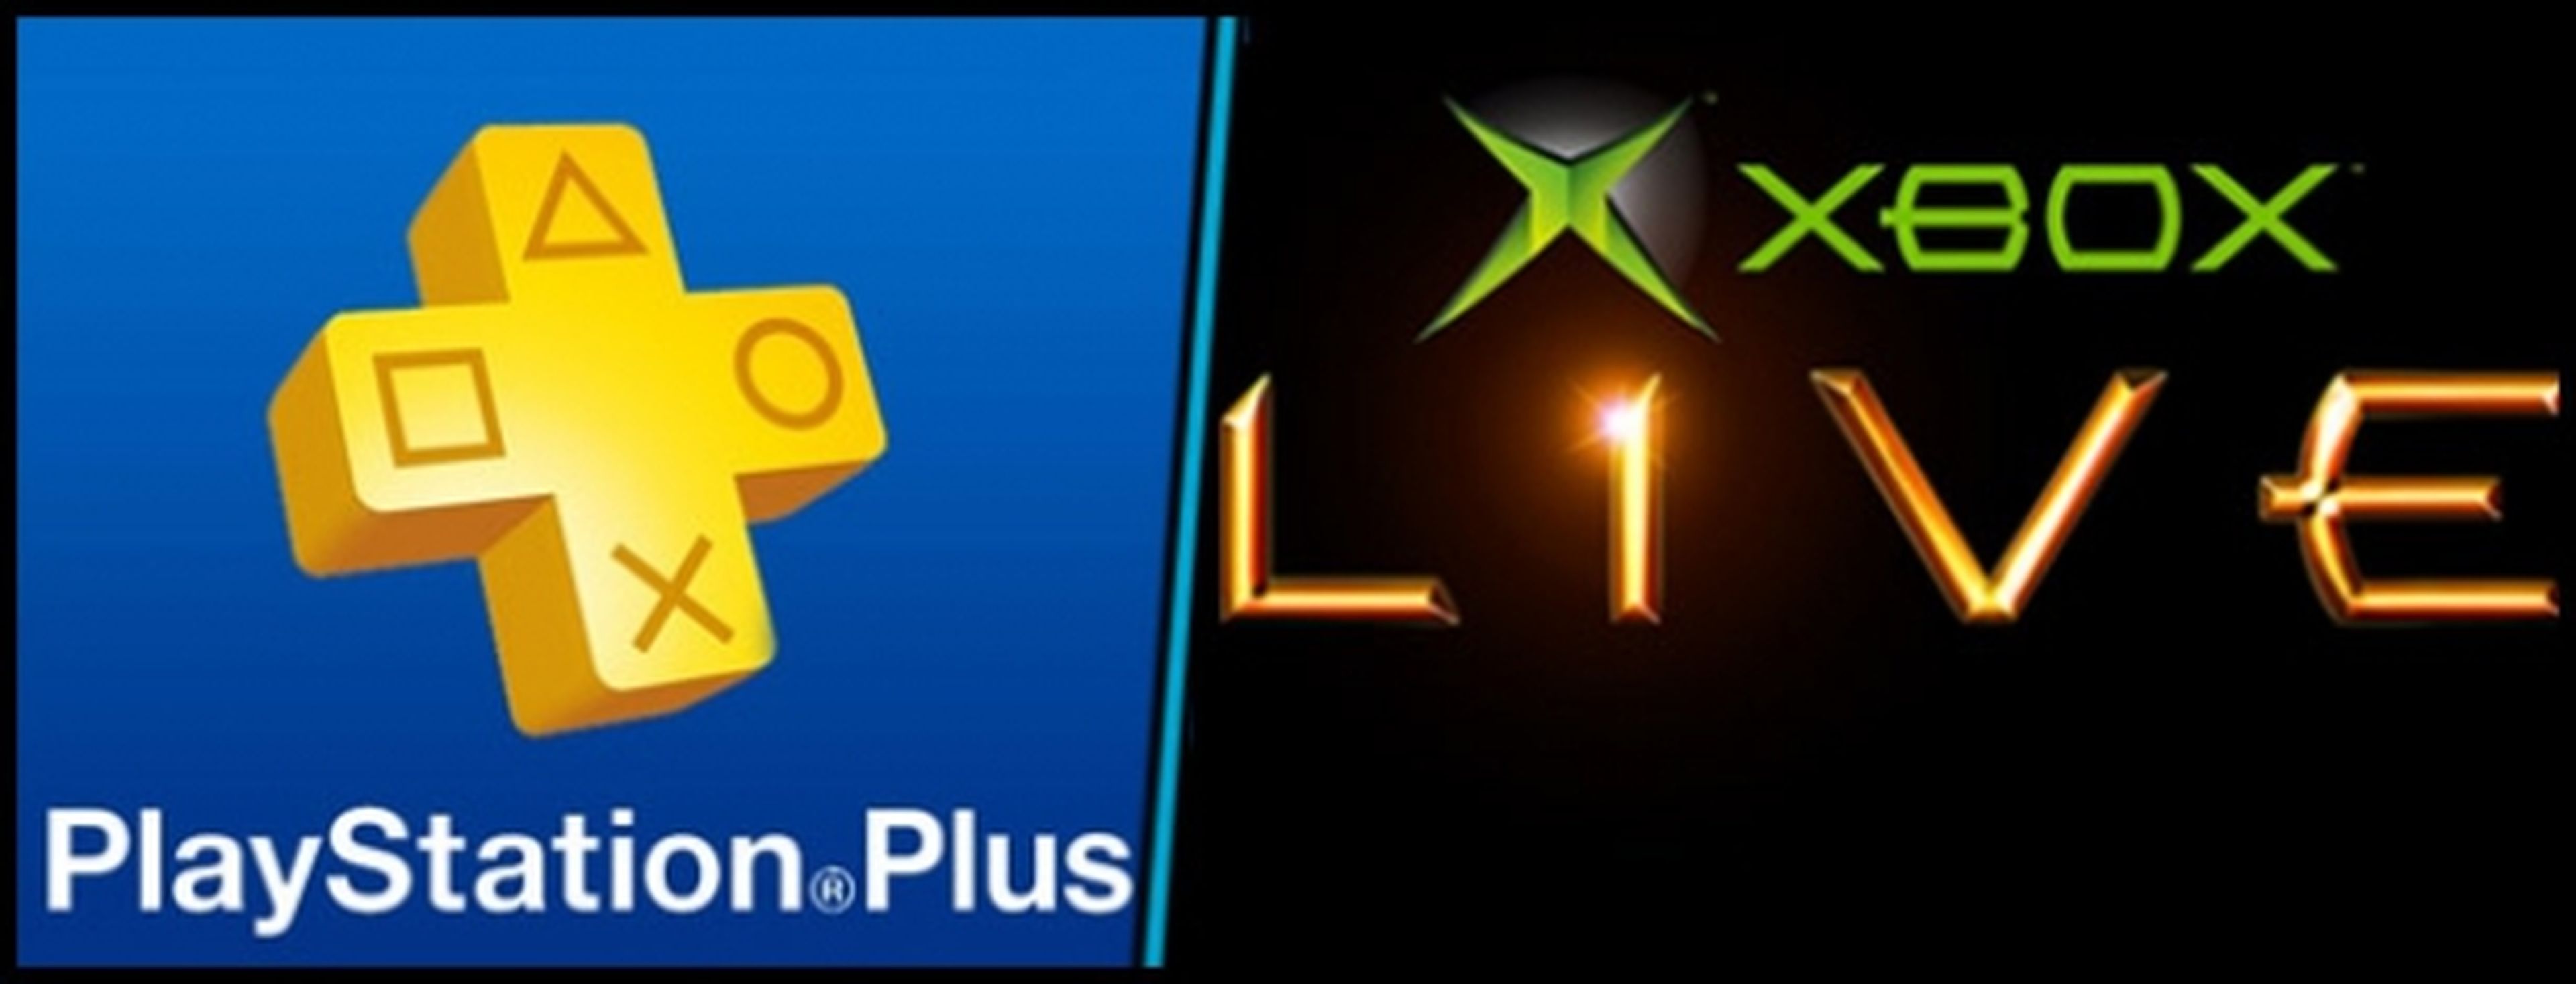 PS Plus vs Xbox Live Gold ¿Cuál fue más rentable en 2014?